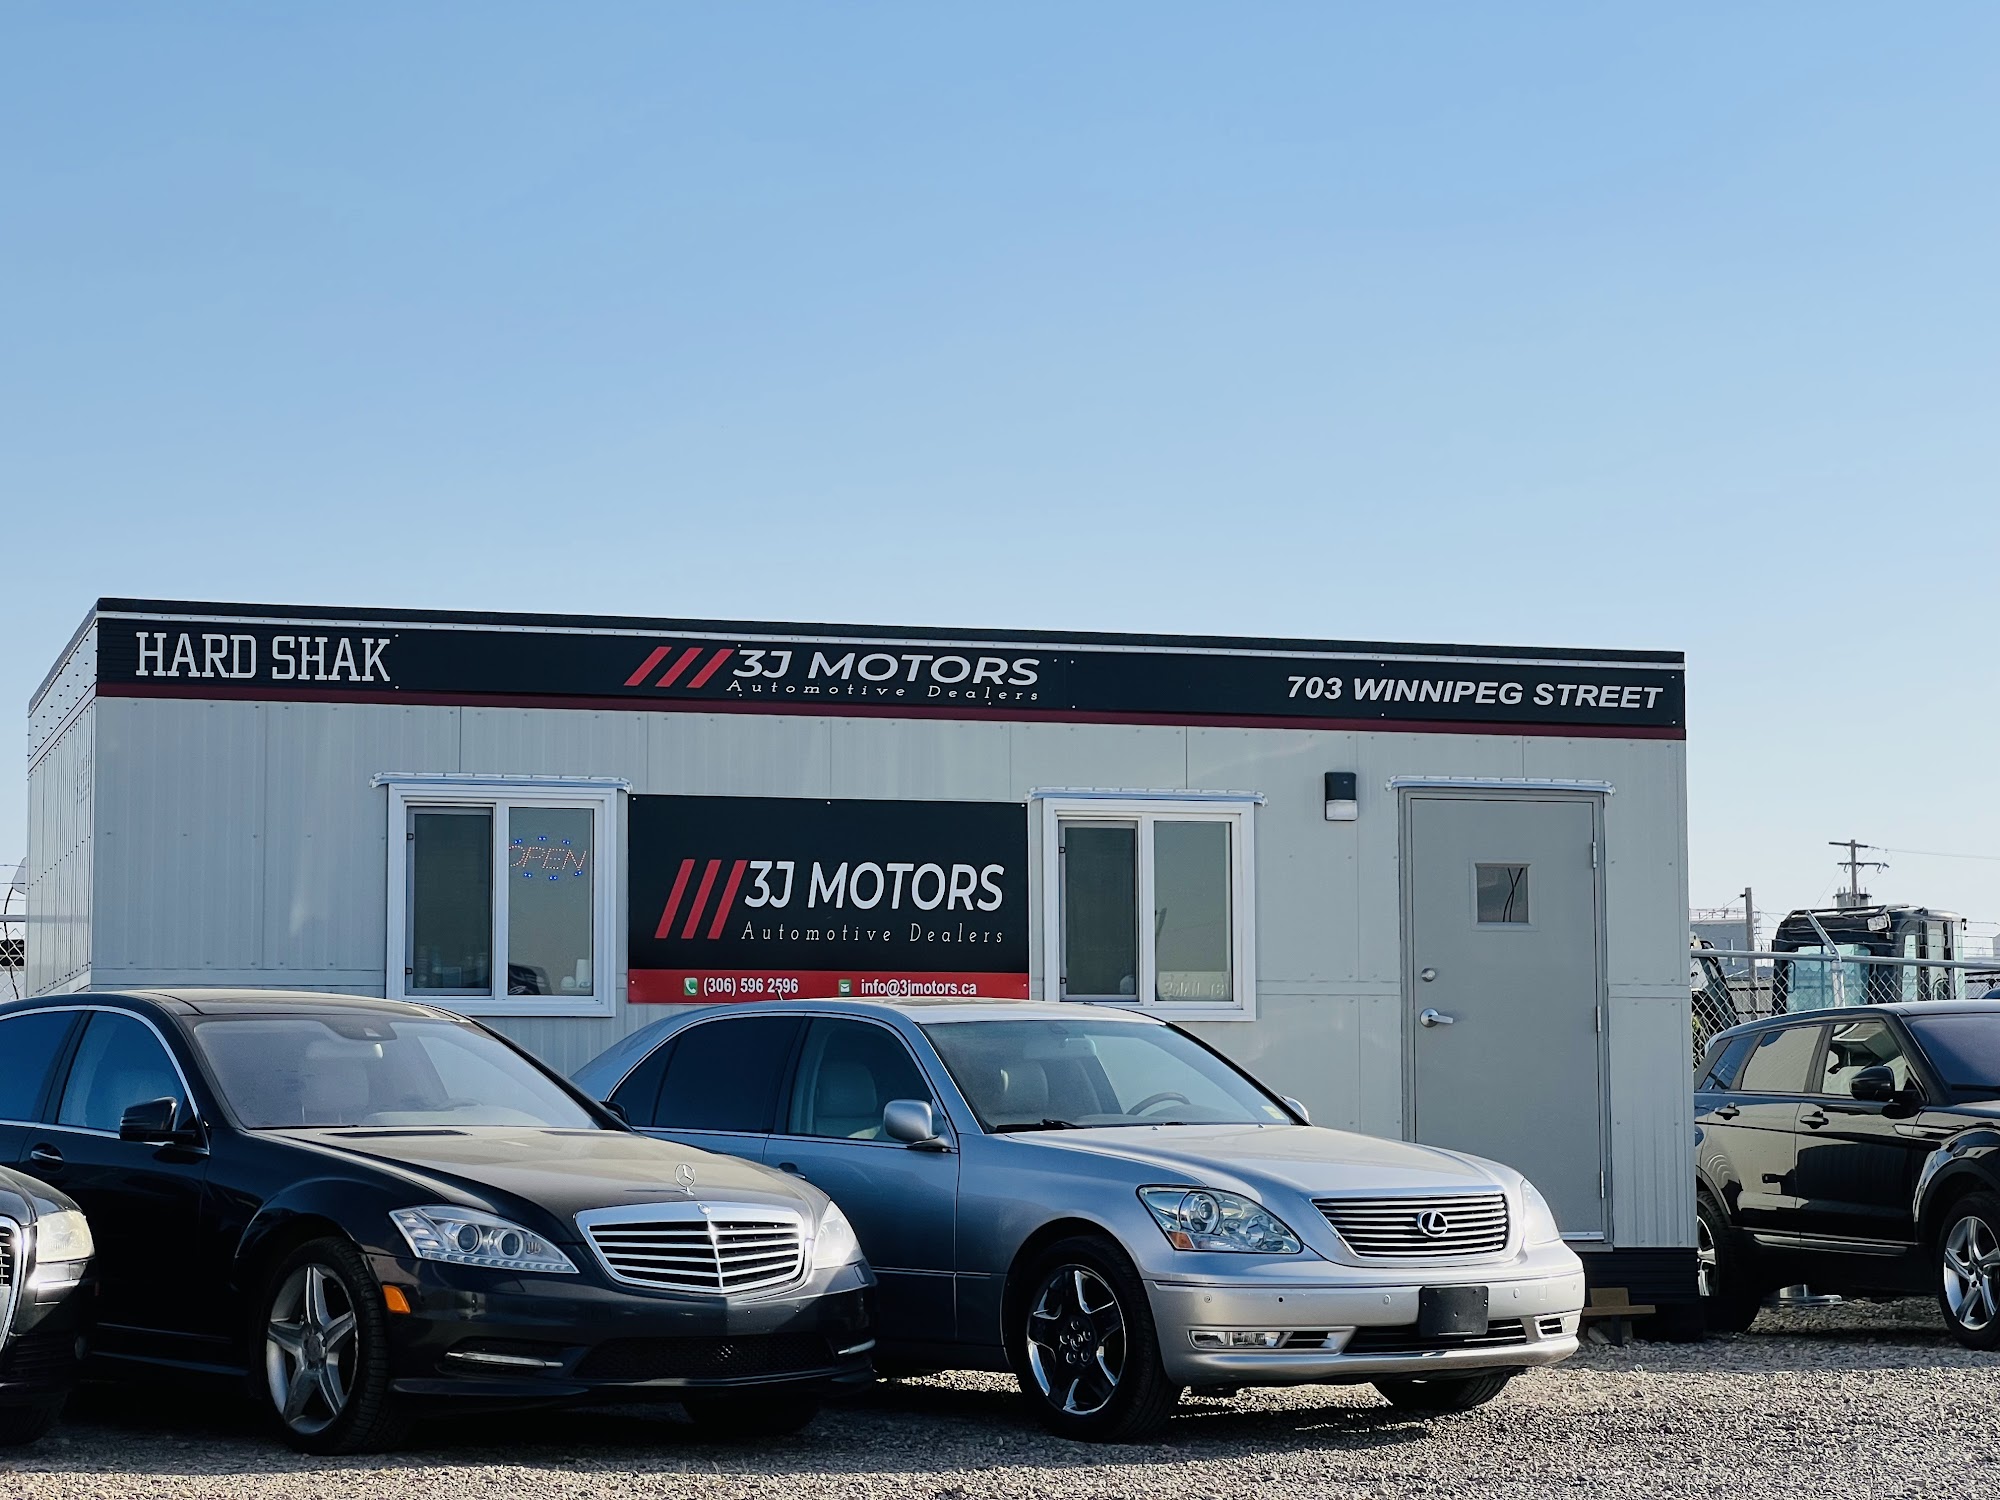 3J Motors (Automotive Dealers)